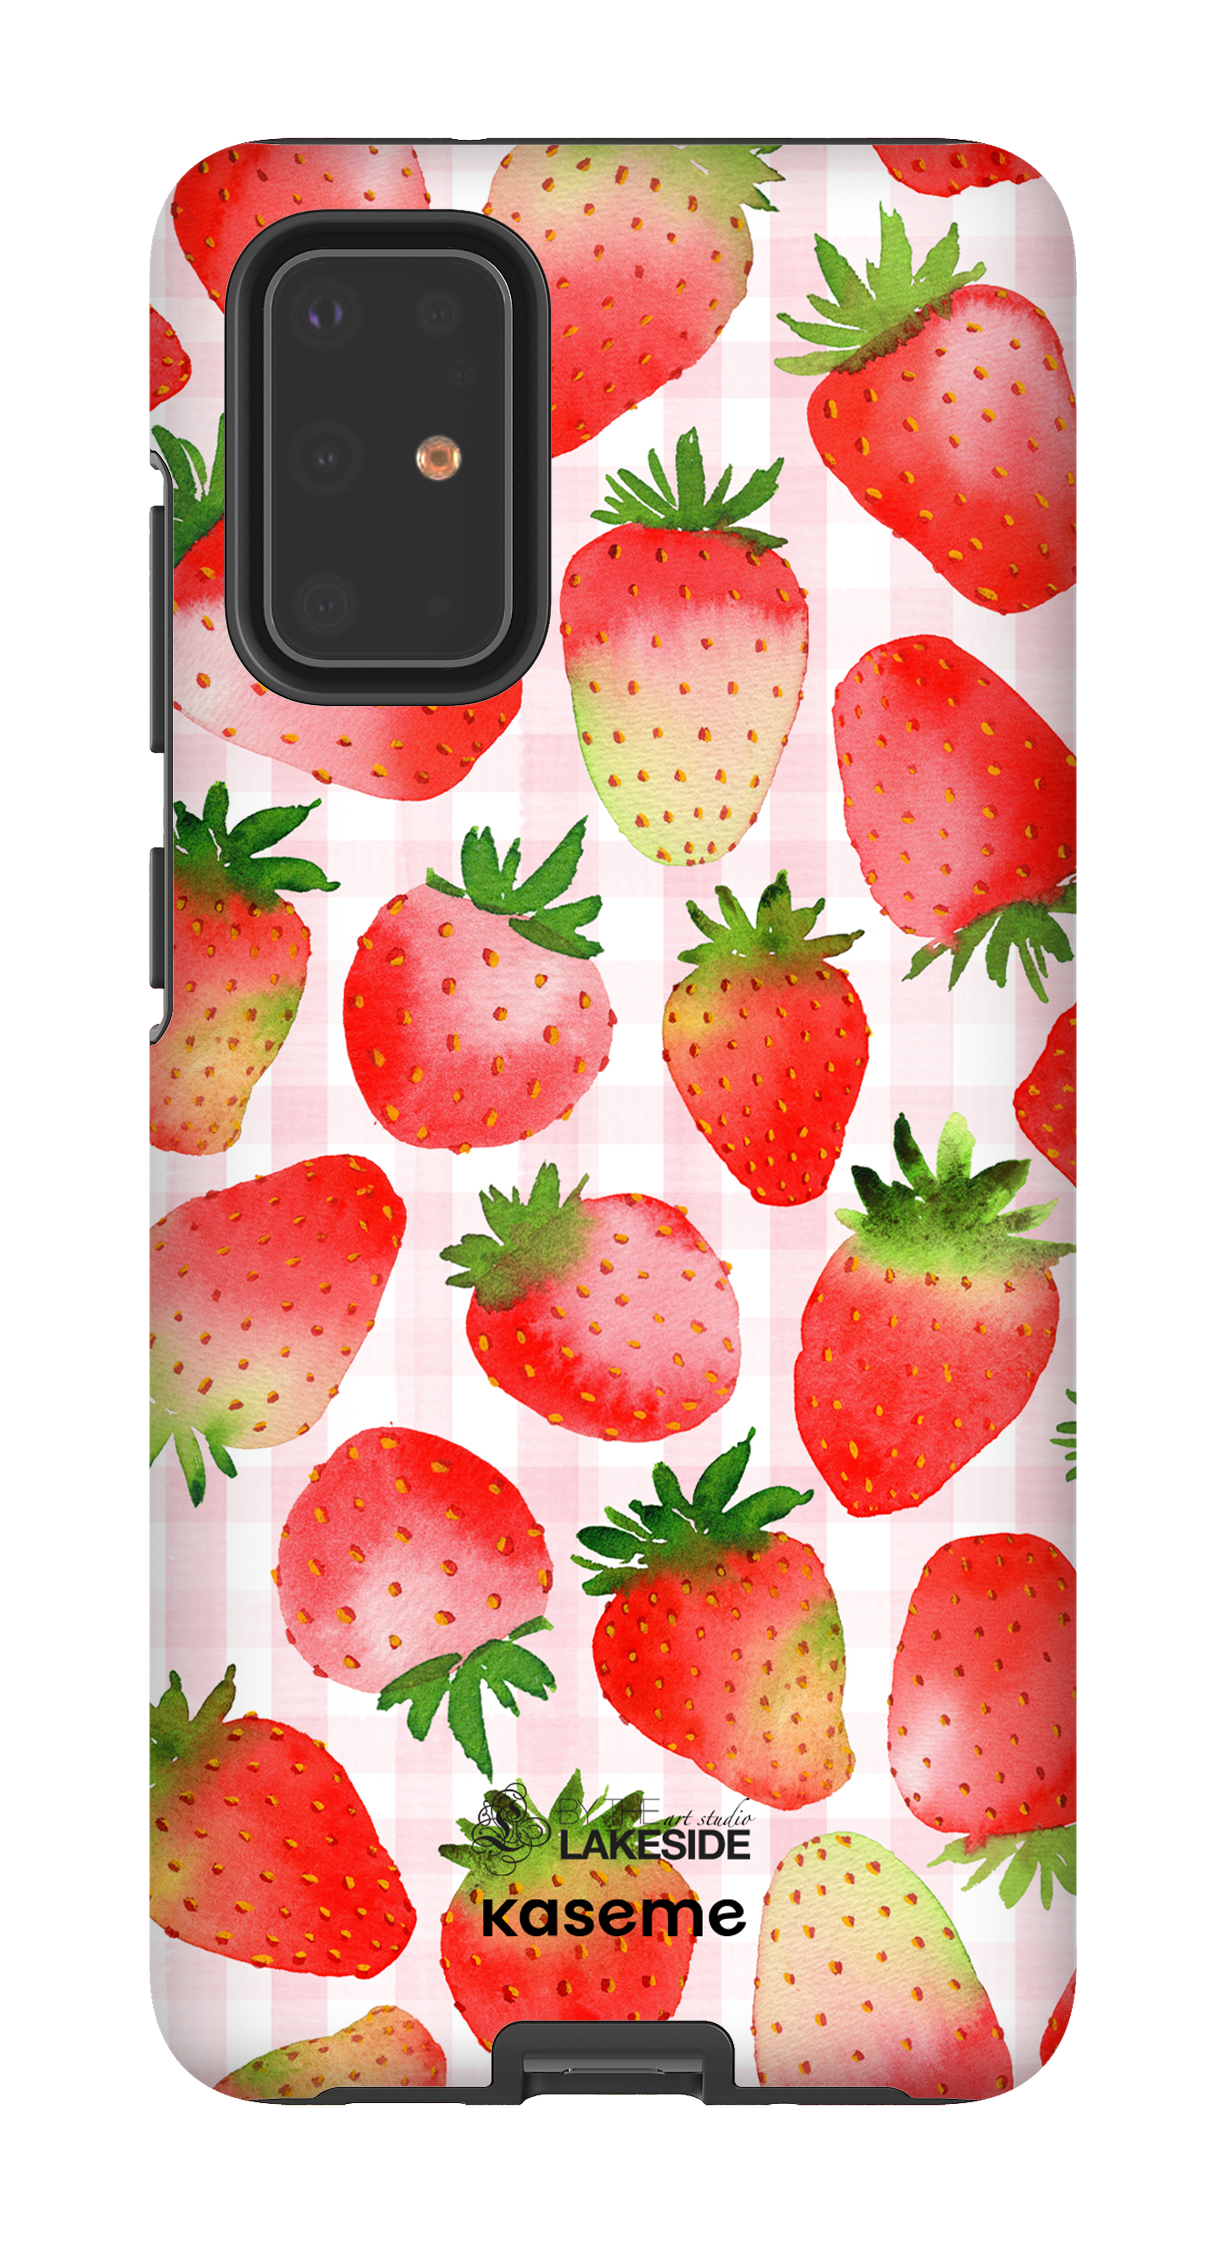 Strawberry Fields by Pooja Umrani - Galaxy S20 Plus